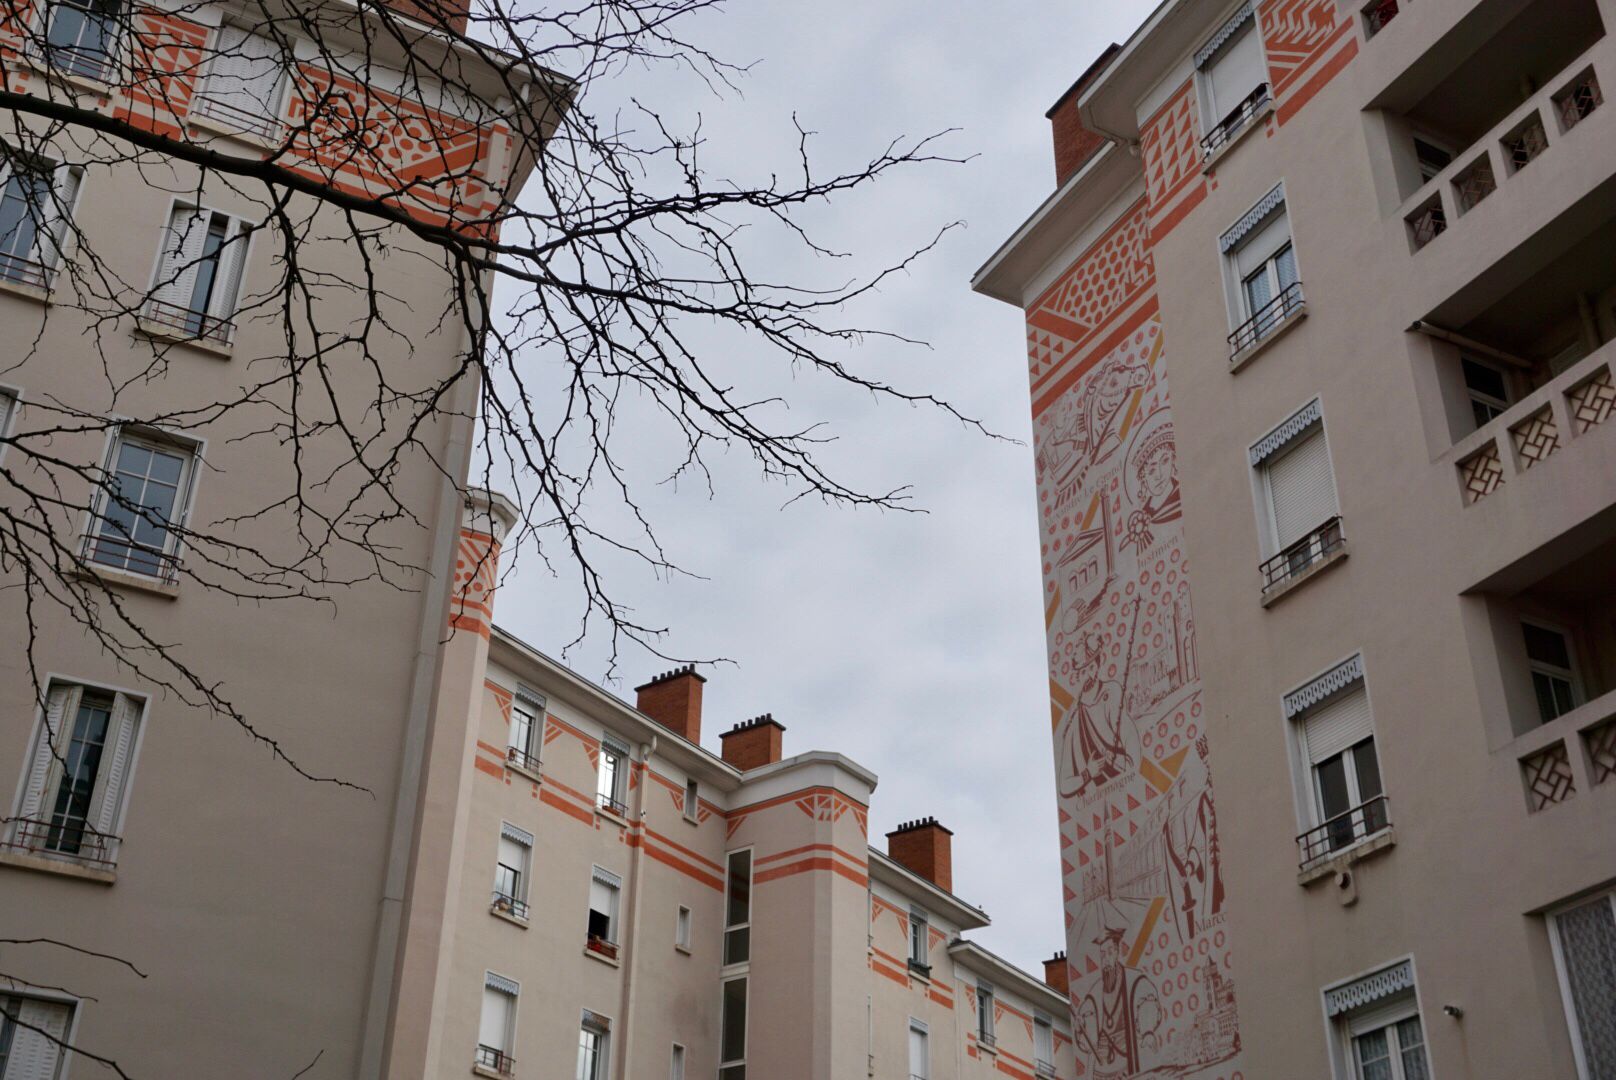 Des immeubles résidentiels de plusieurs étages avec des ornements rouge-orange et une grande fresque murale détaillée sur la façade, sont encadrée par un arbre nu.